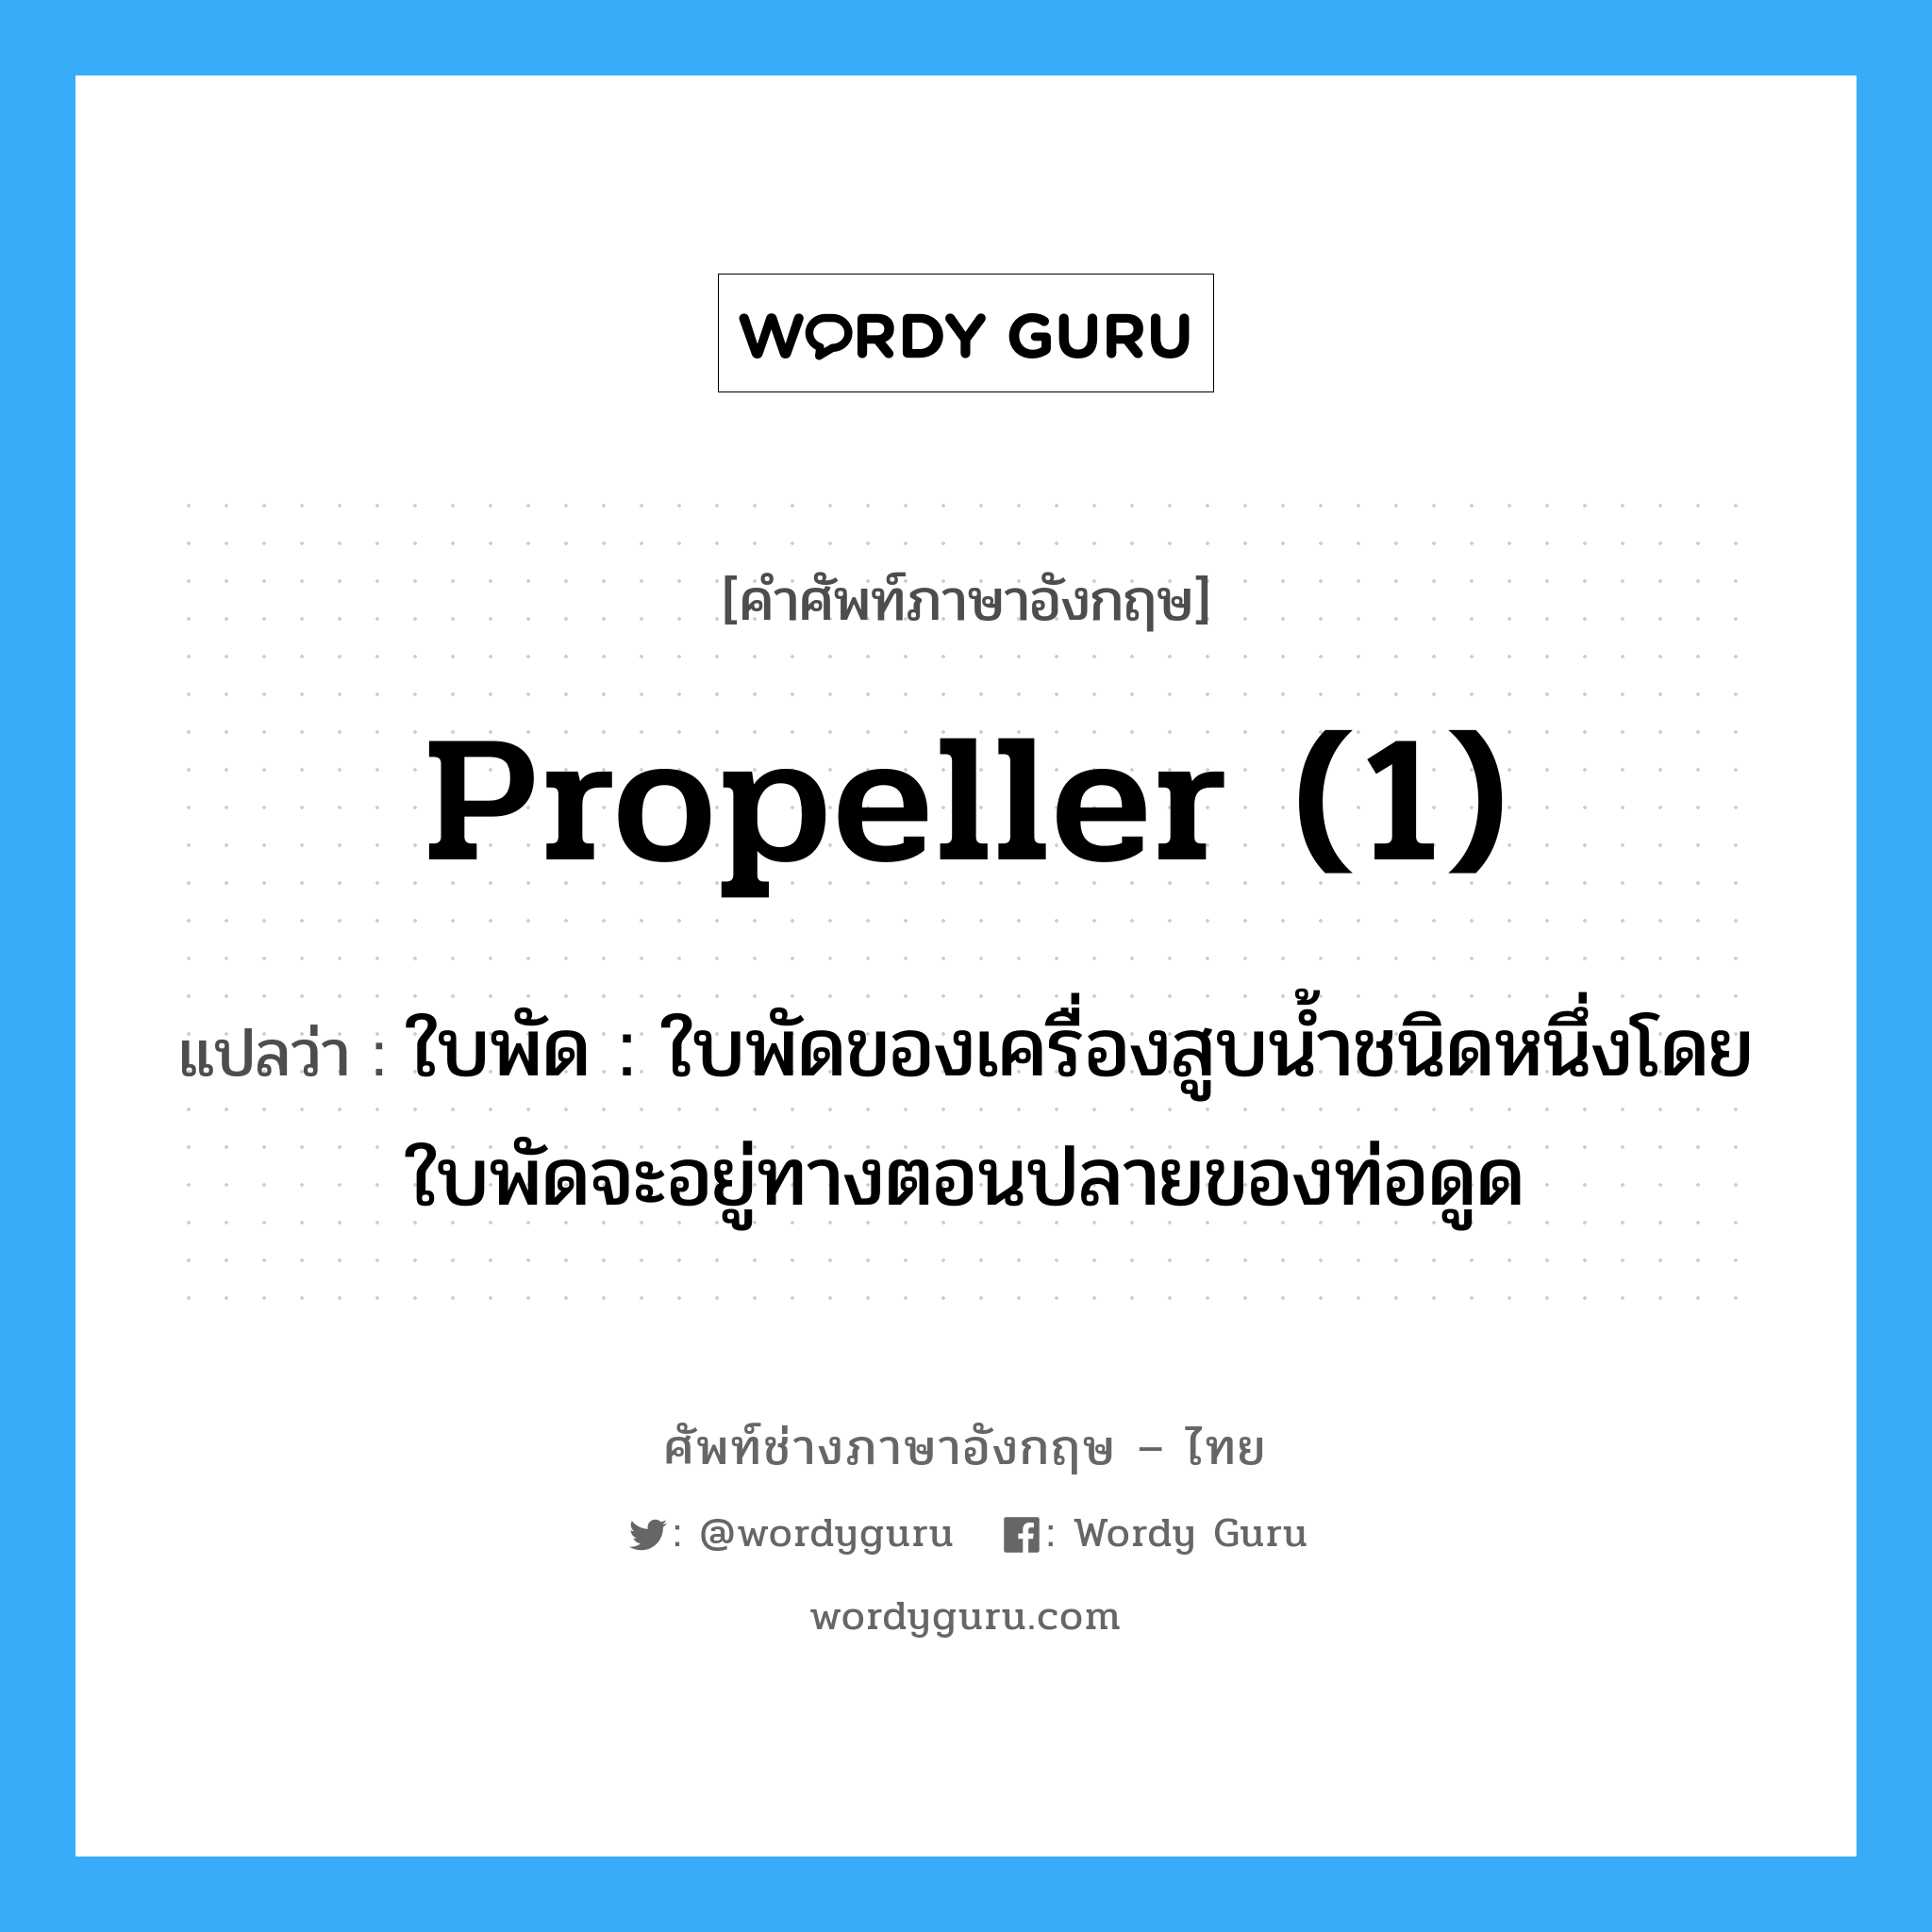 propeller (1) แปลว่า?, คำศัพท์ช่างภาษาอังกฤษ - ไทย propeller (1) คำศัพท์ภาษาอังกฤษ propeller (1) แปลว่า ใบพัด : ใบพัดของเครื่องสูบน้ำชนิดหนึ่งโดยใบพัดจะอยู่ทางตอนปลายของท่อดูด